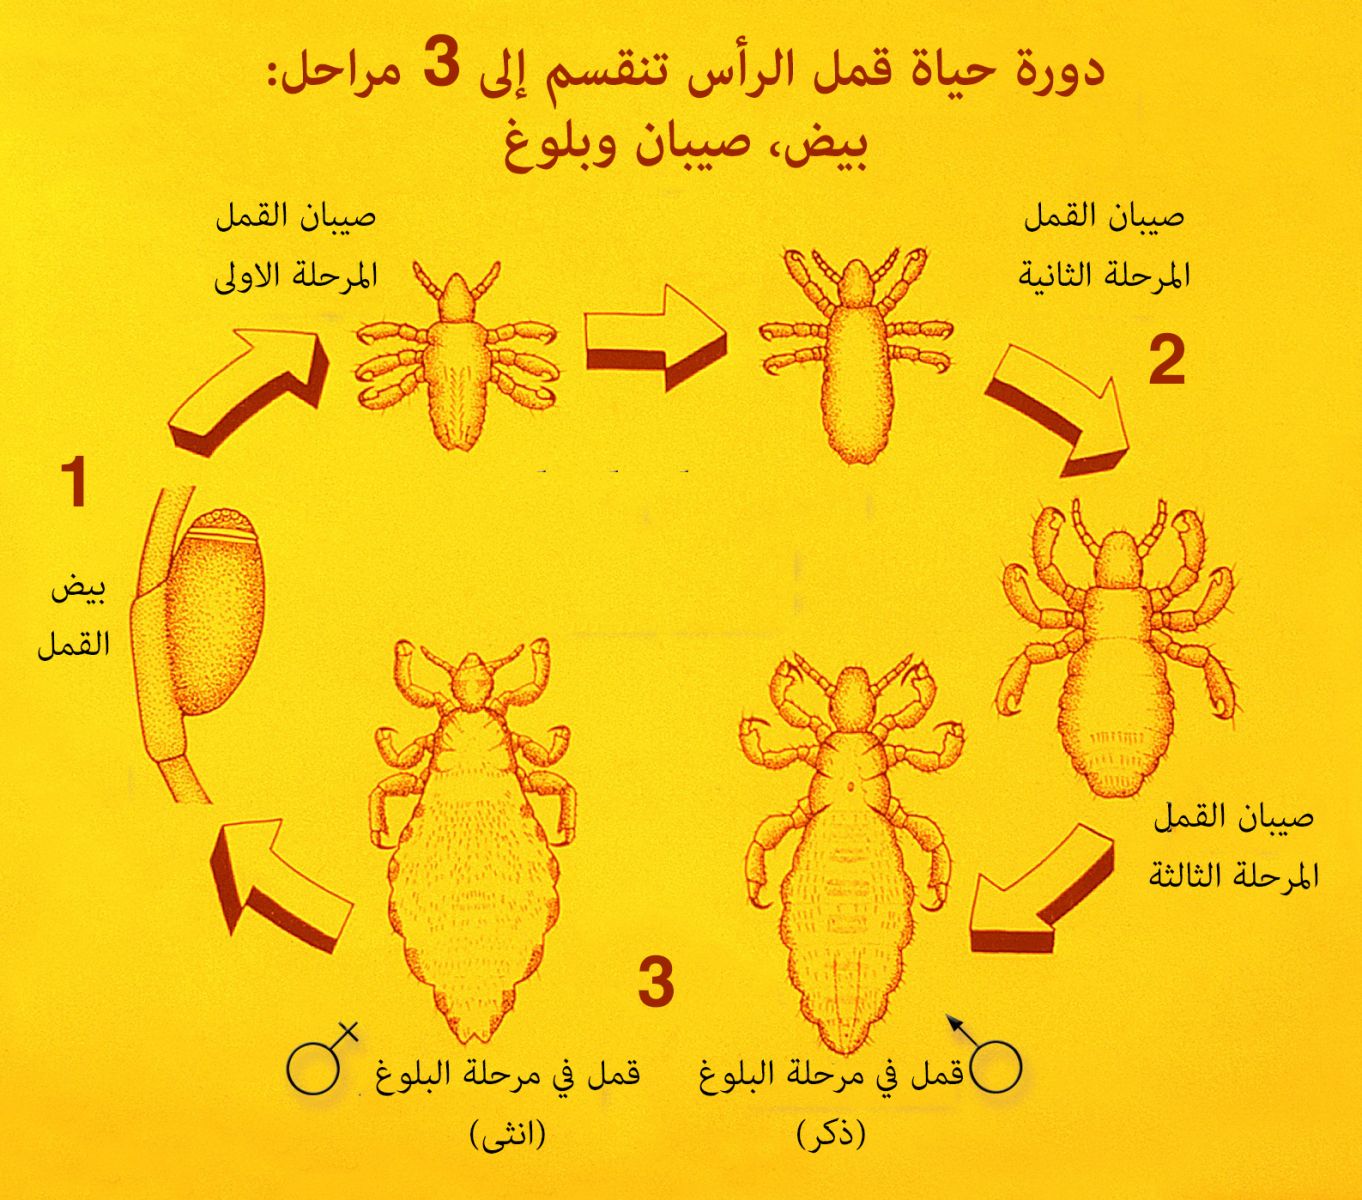 تطور القمل في الراس ينقسم الى 3 مراحل: بيض القمل، صيبان القمل، القمل البالغ